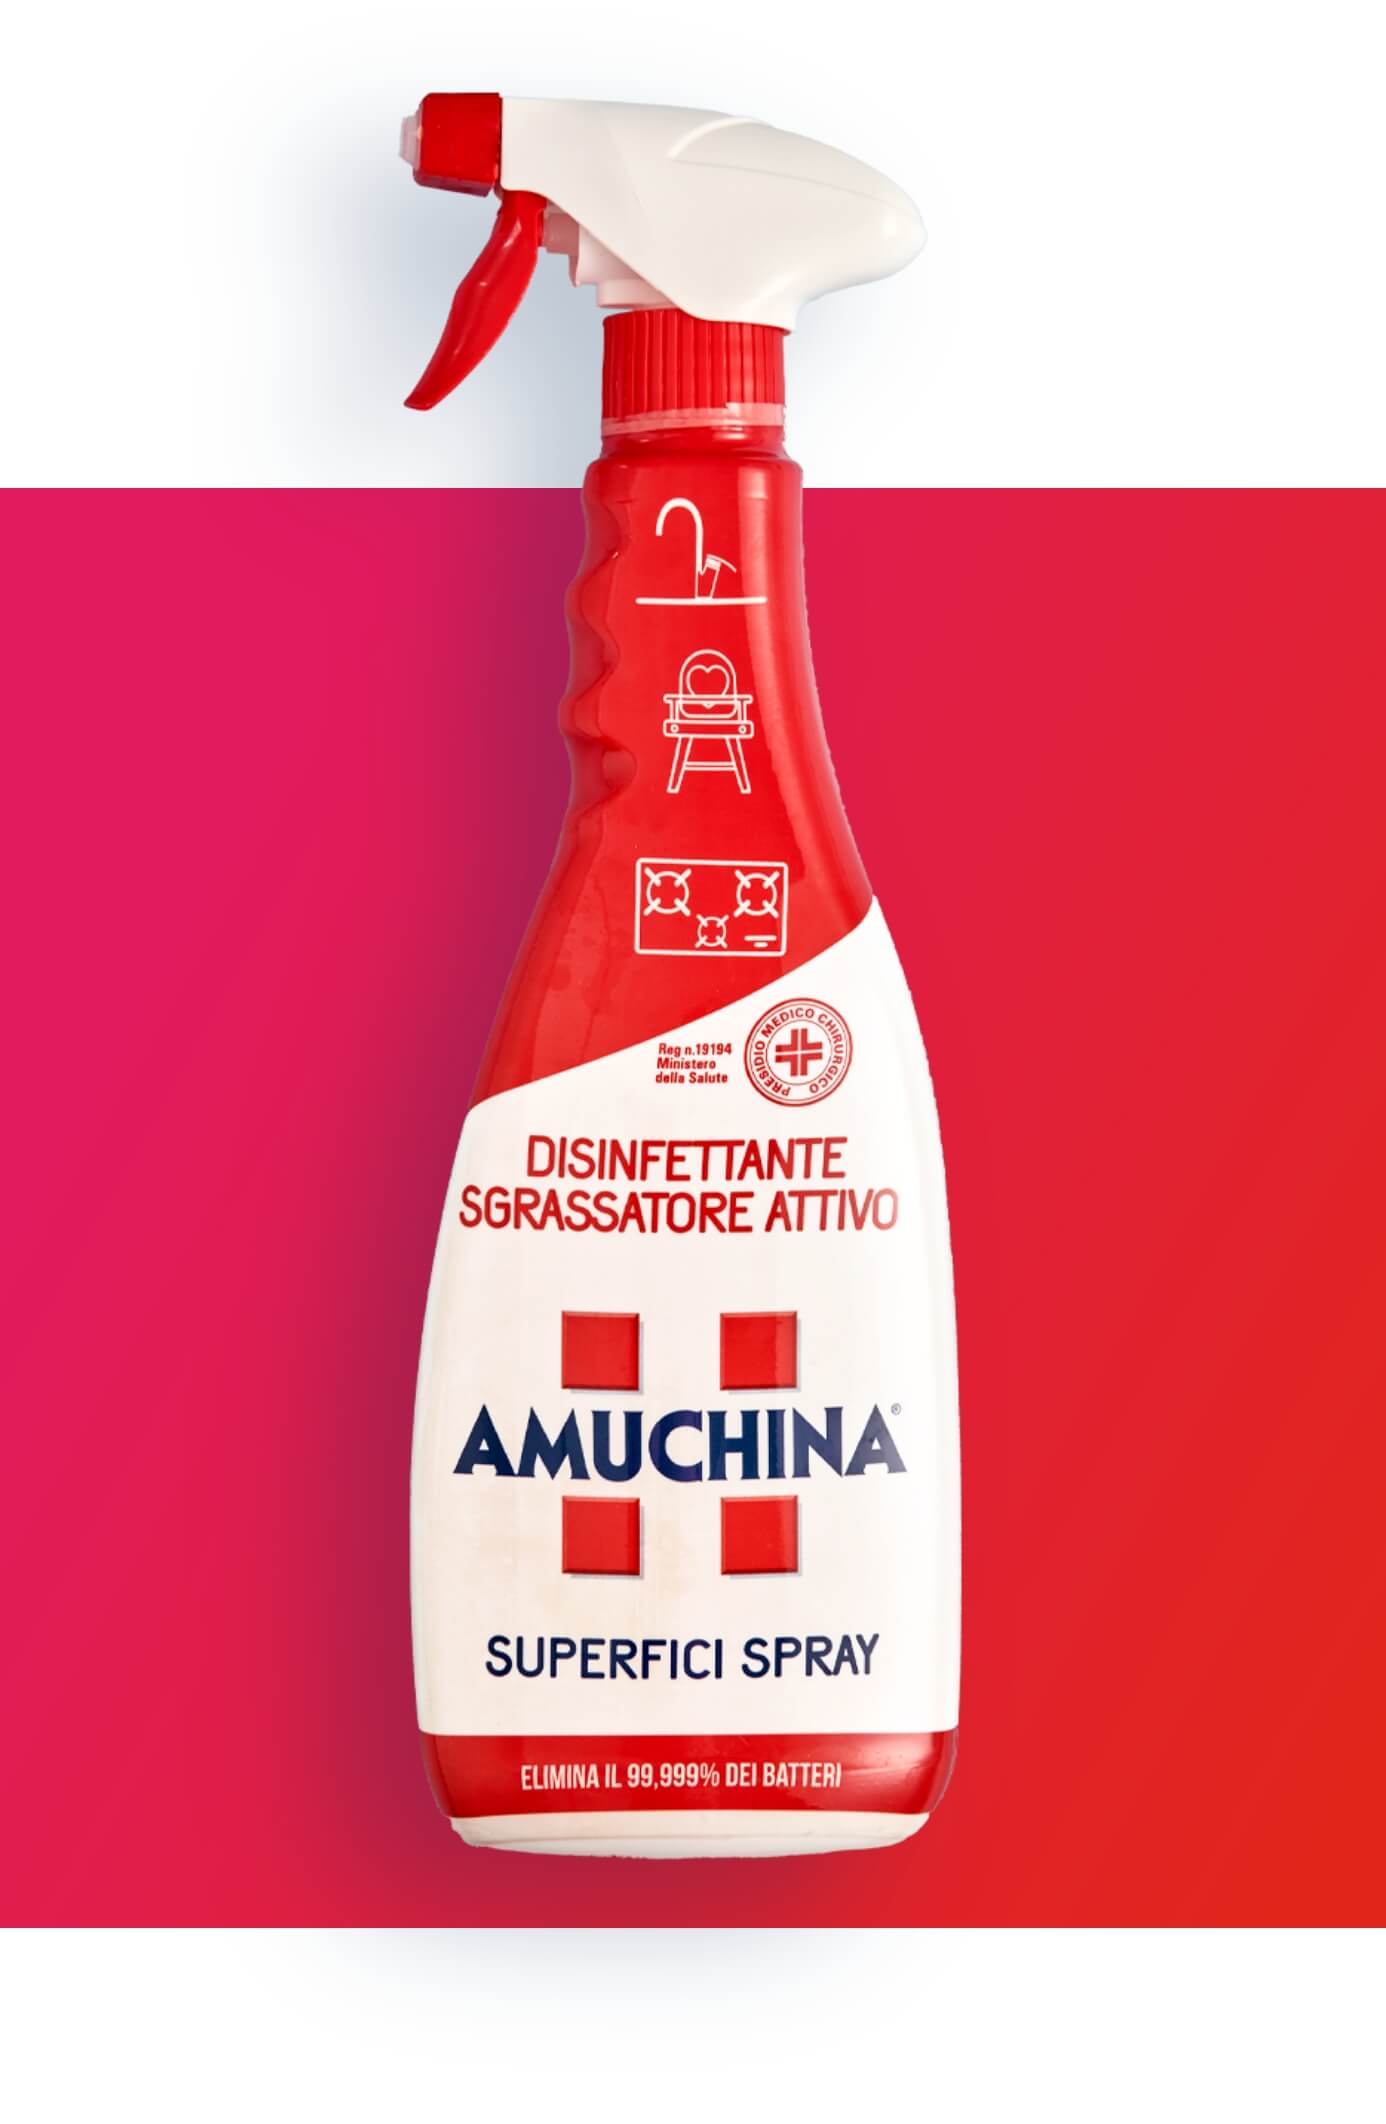 Amuchina Superfici Spray Disinfettante Spray